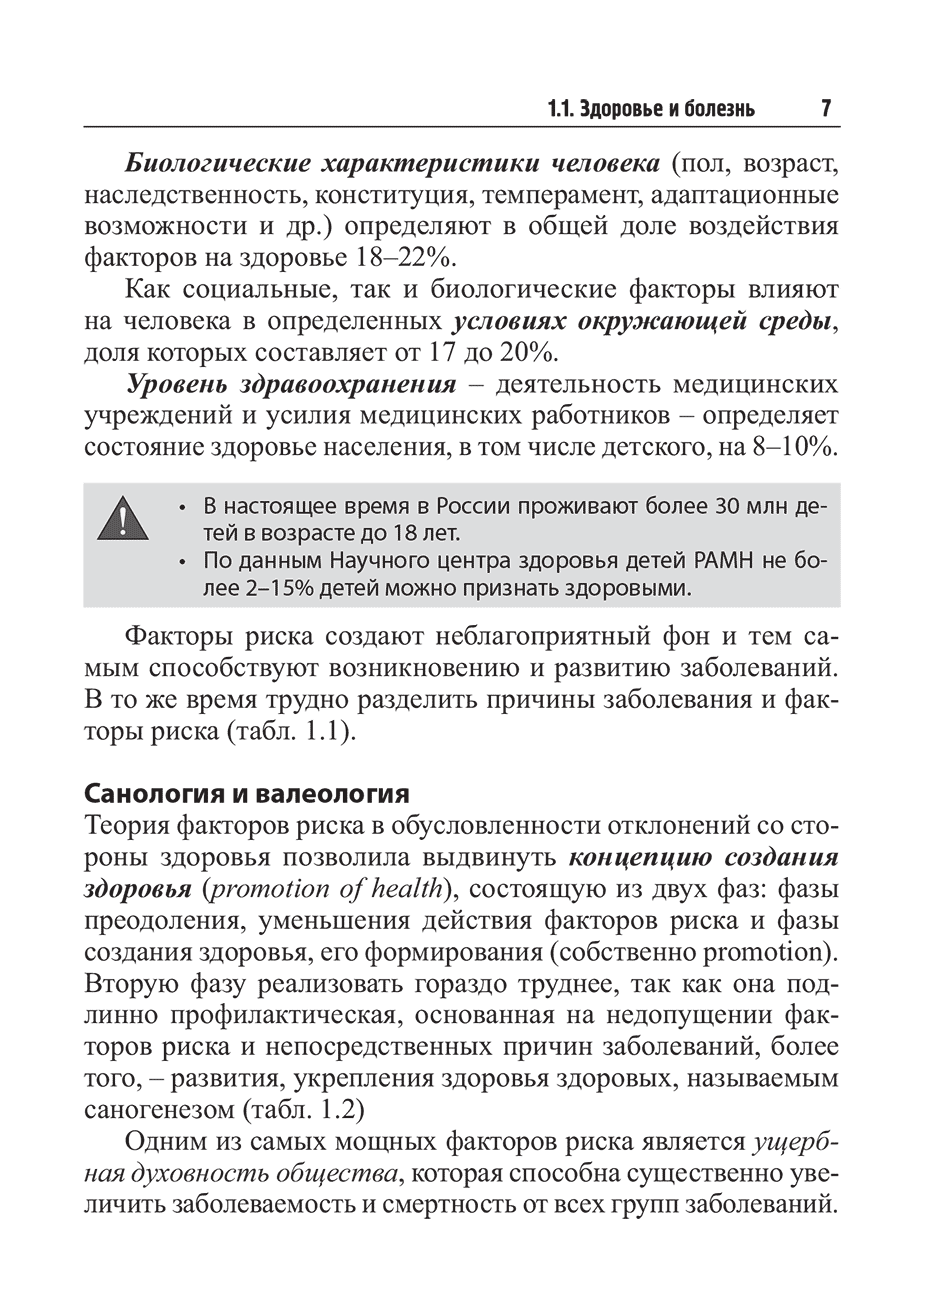 Пример страницы из книги "Здоровый ребенок: медицинский контроль" - Кильдиярова P. P.